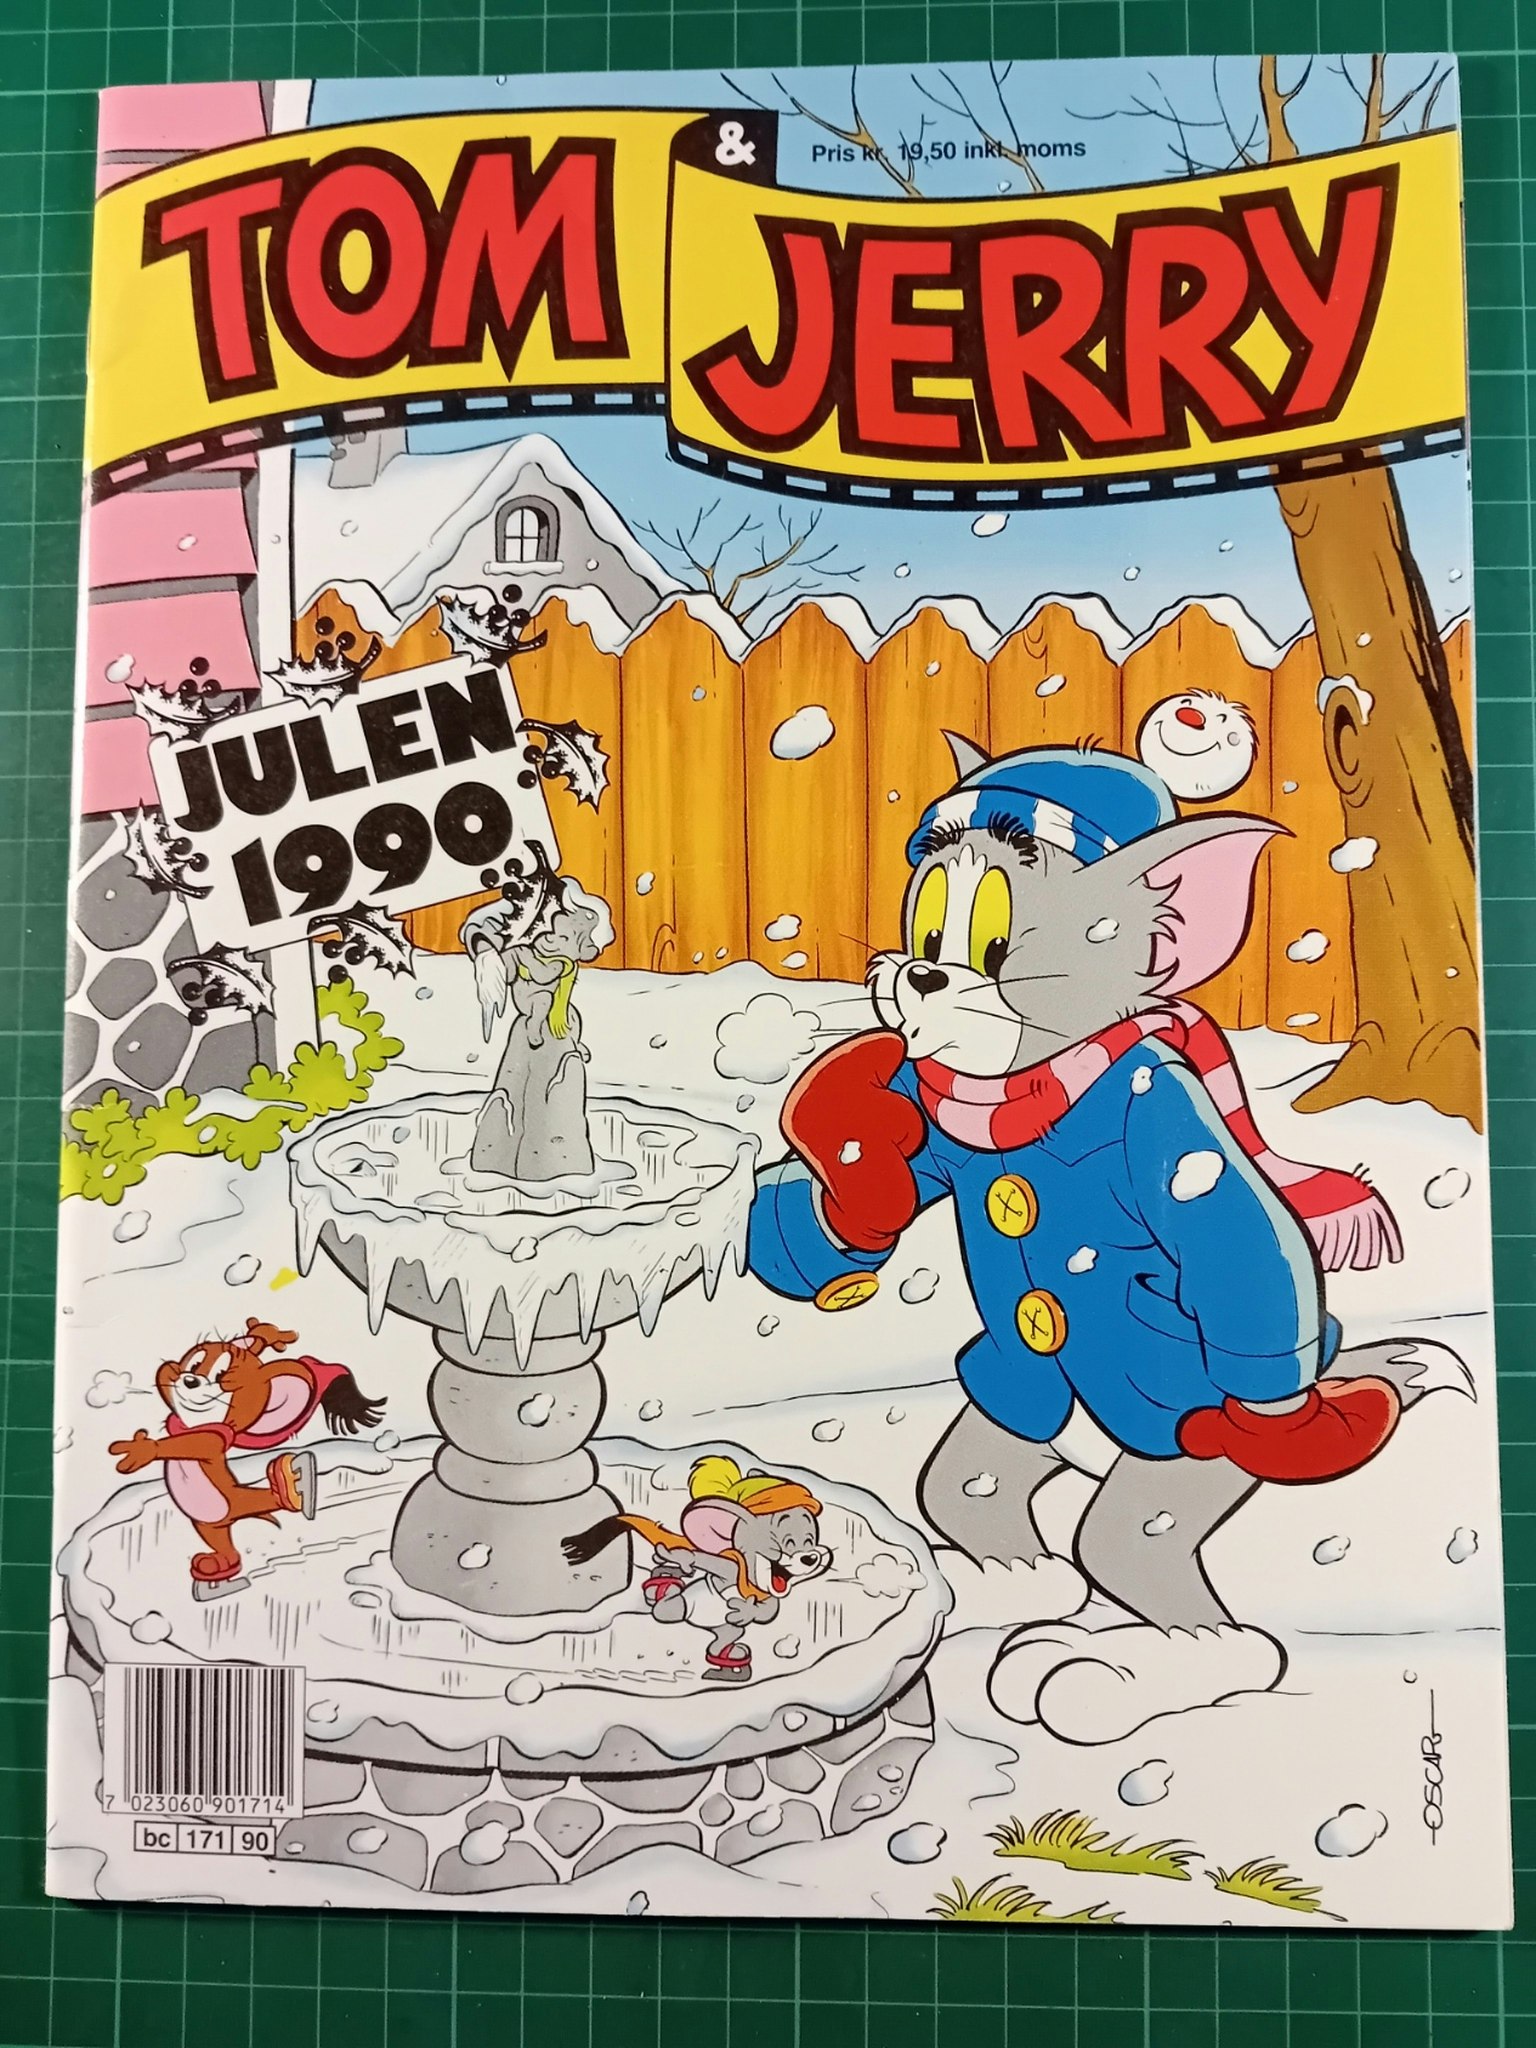 Tom & Jerry julen 1990